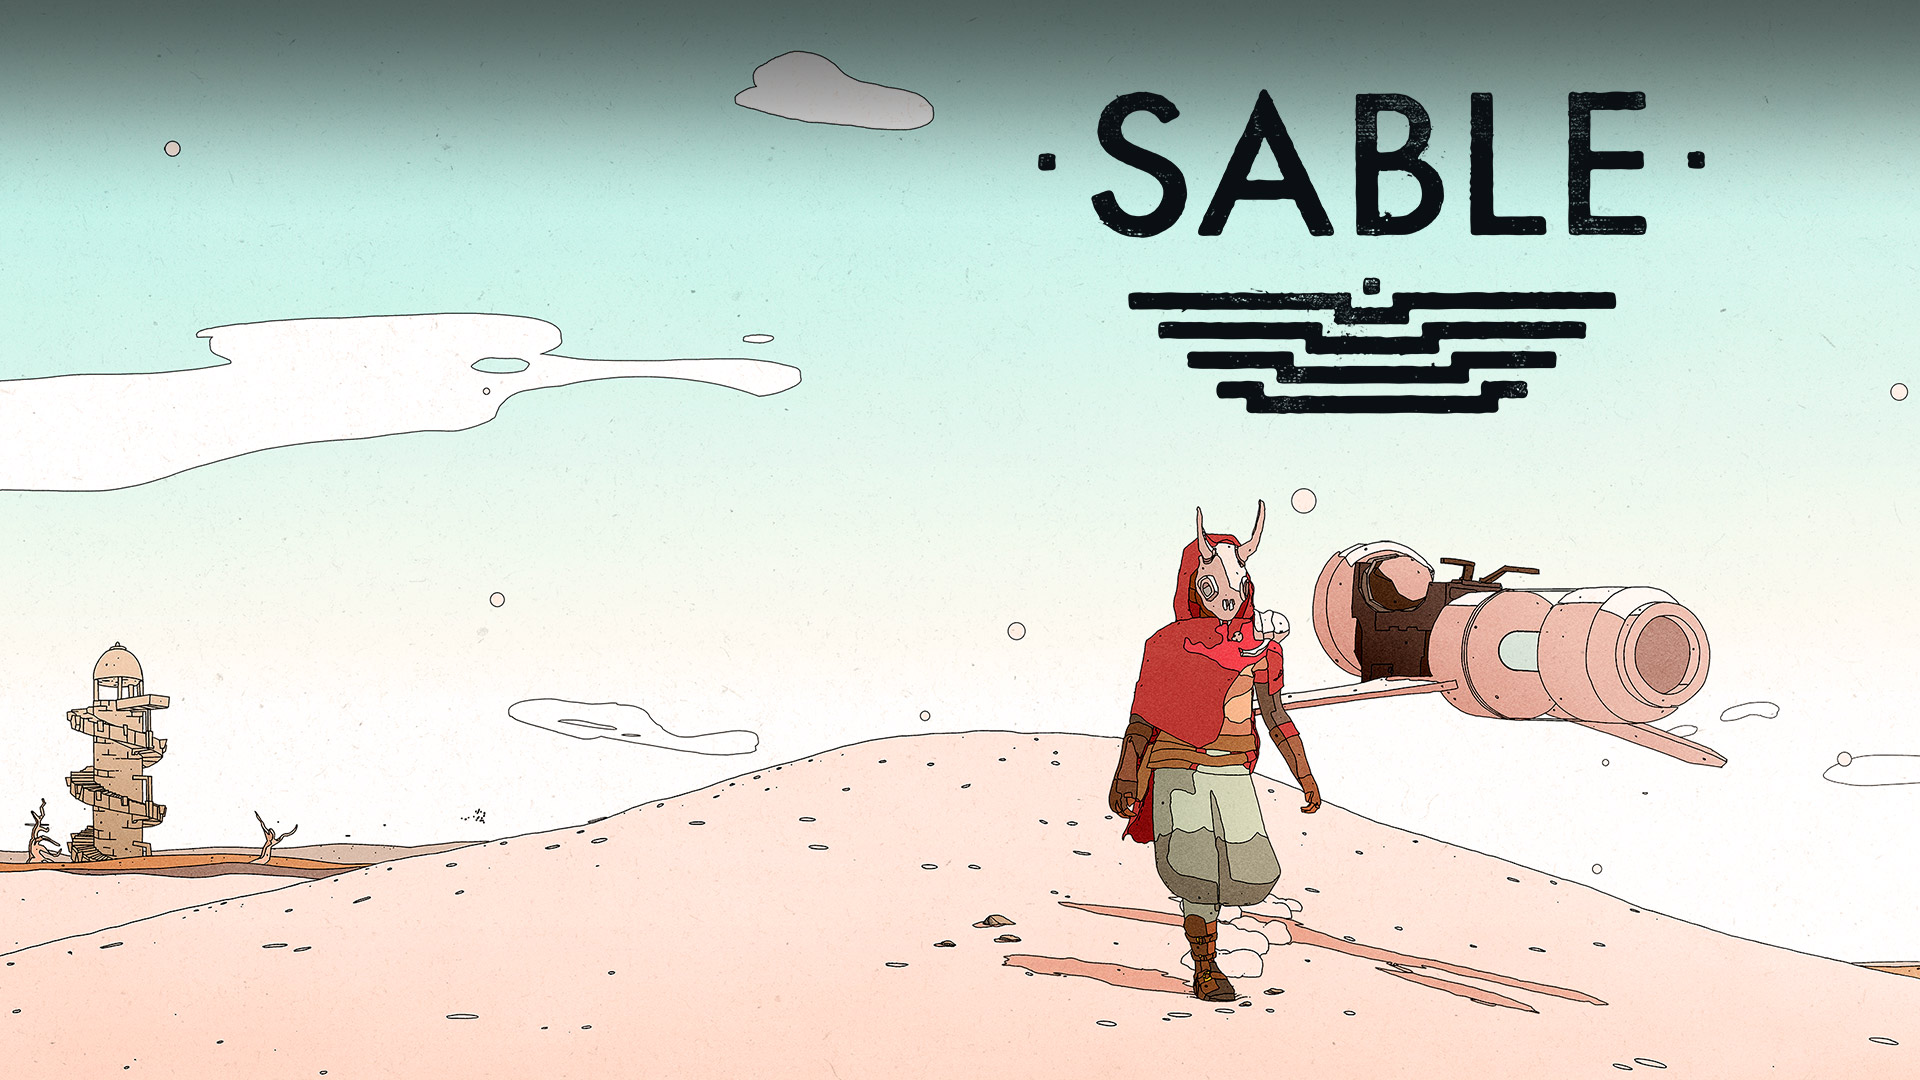 Sable-Logo, Sable in der Wüste mit einem Hoverbike